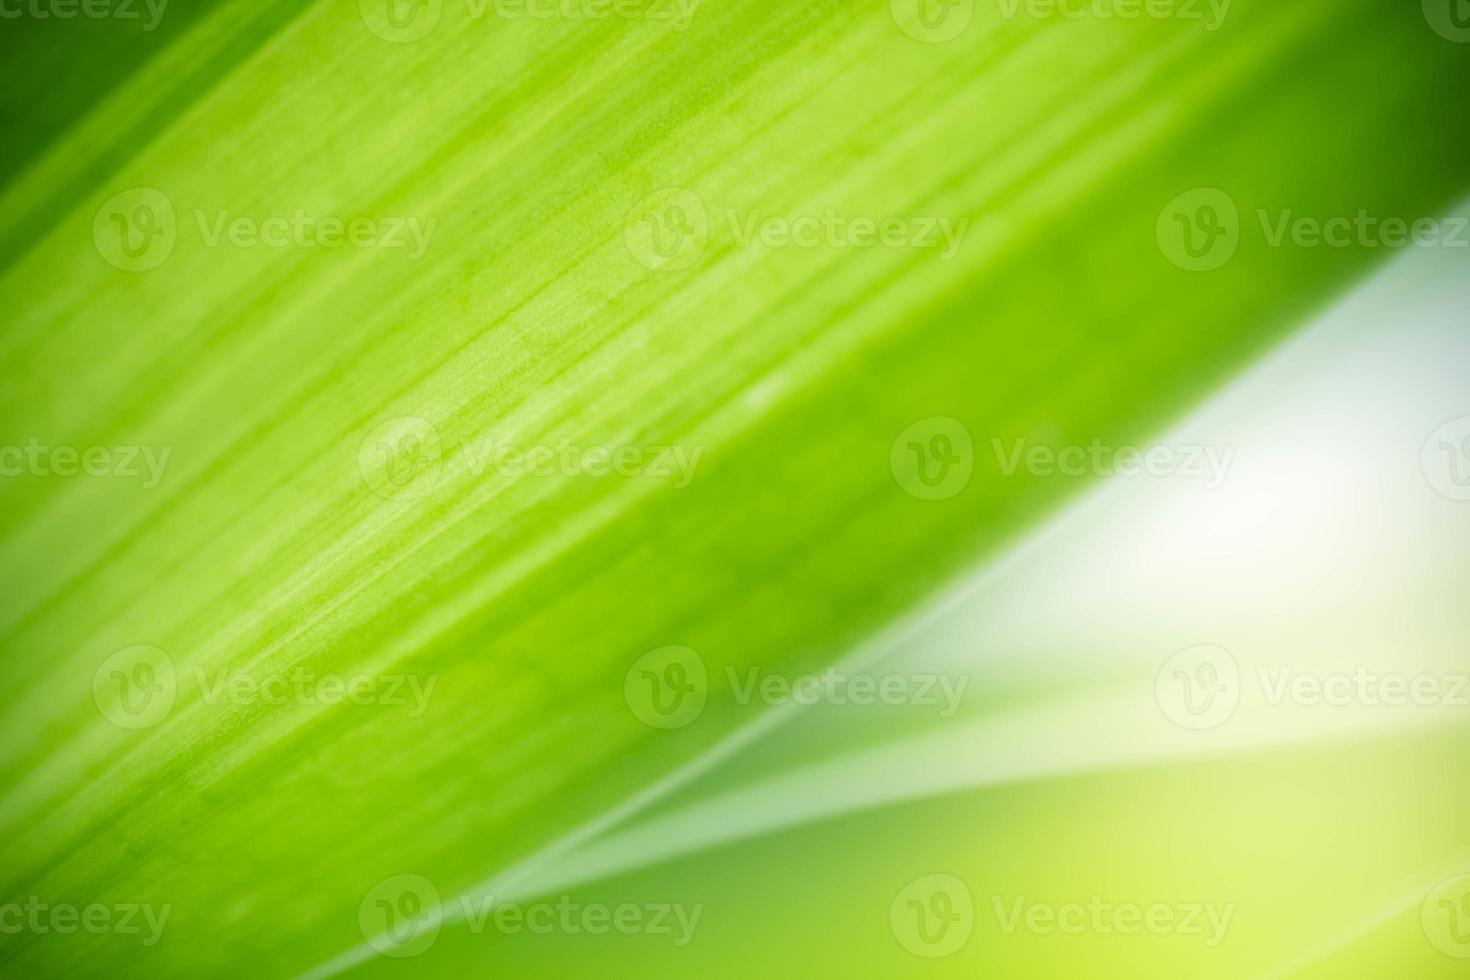 natureza abstrata do fundo da folha verde sobre fundo desfocado de vegetação no jardim. folhas verdes naturais plantas usadas como capa de fundo da primavera vegetação ambiente ecologia papel de parede verde limão foto